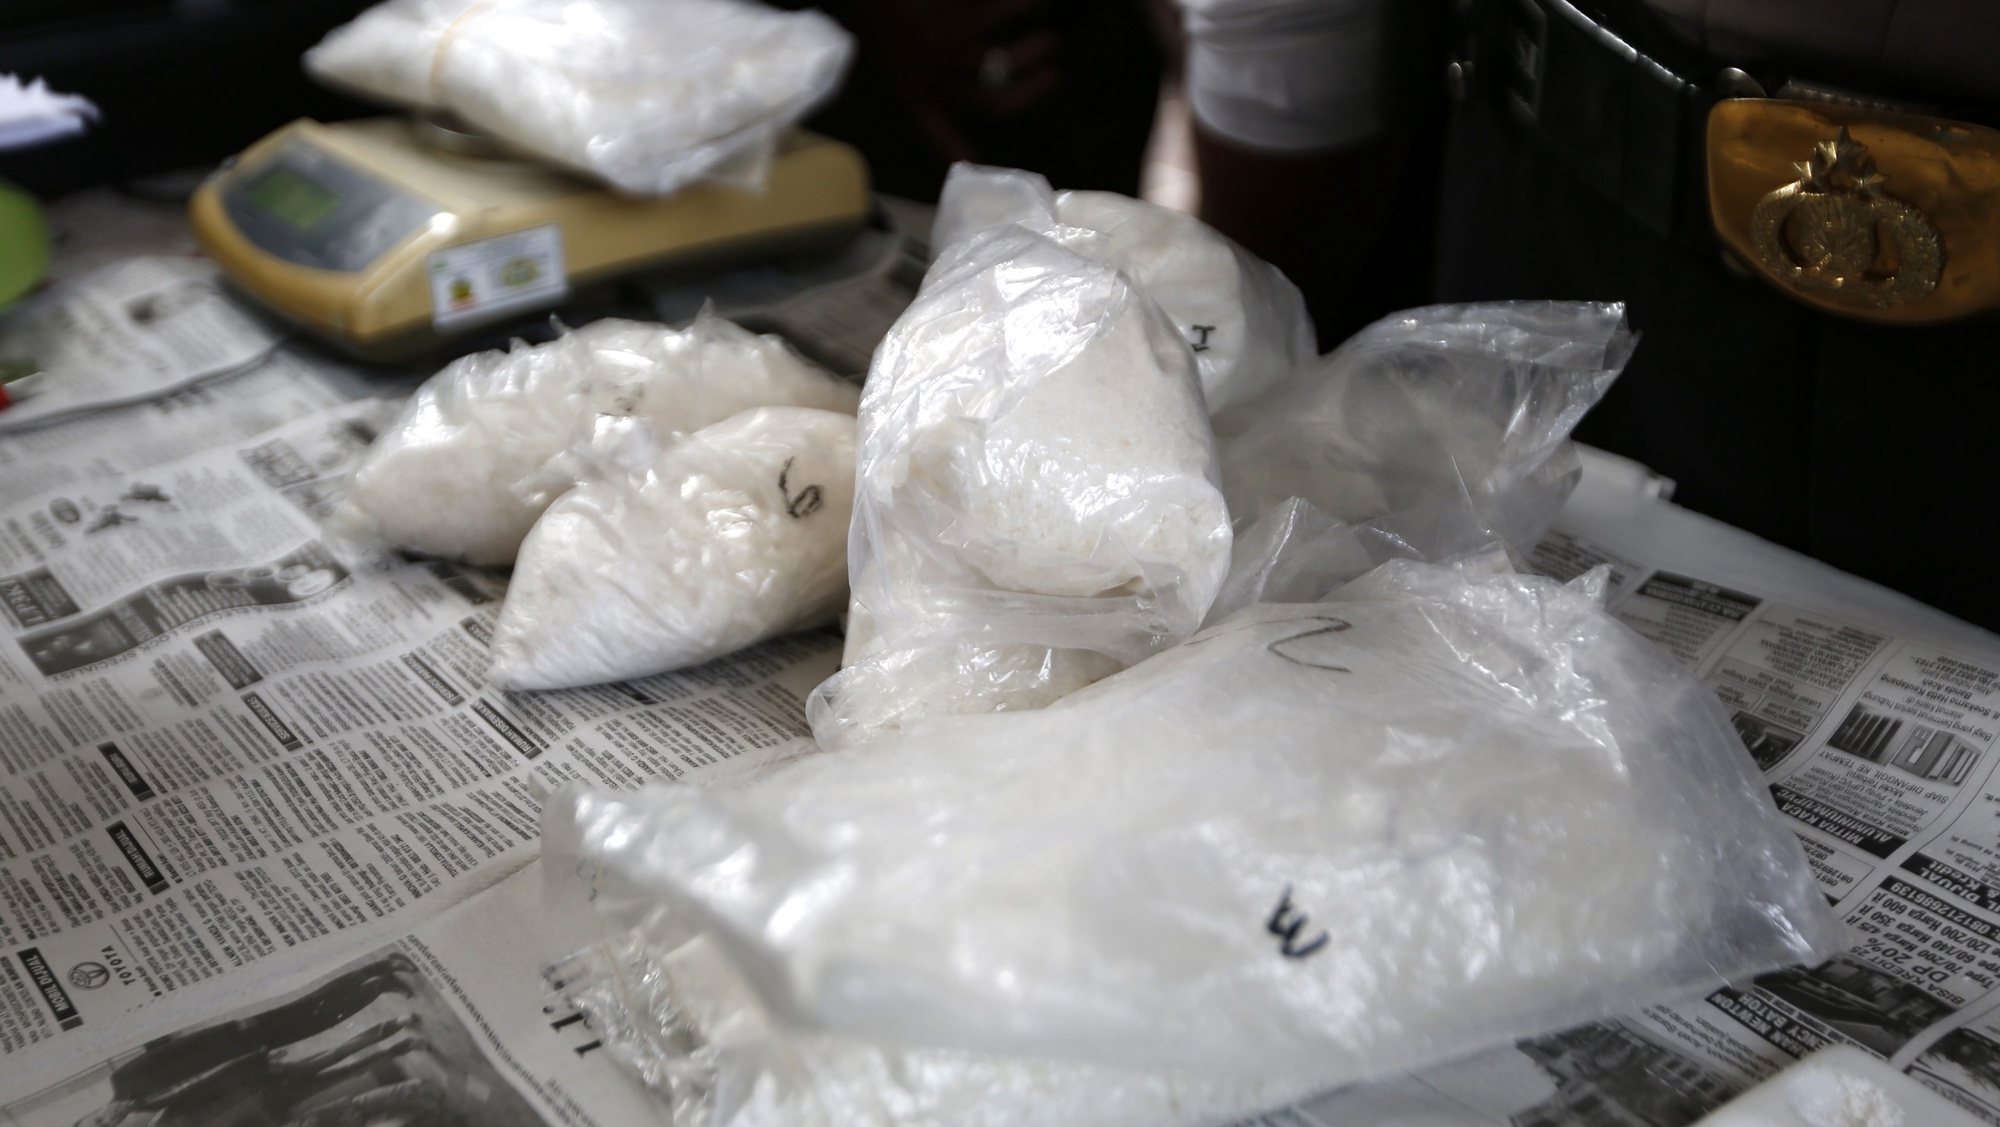 5kg de metanfetaminas apreendidas, Indonésia